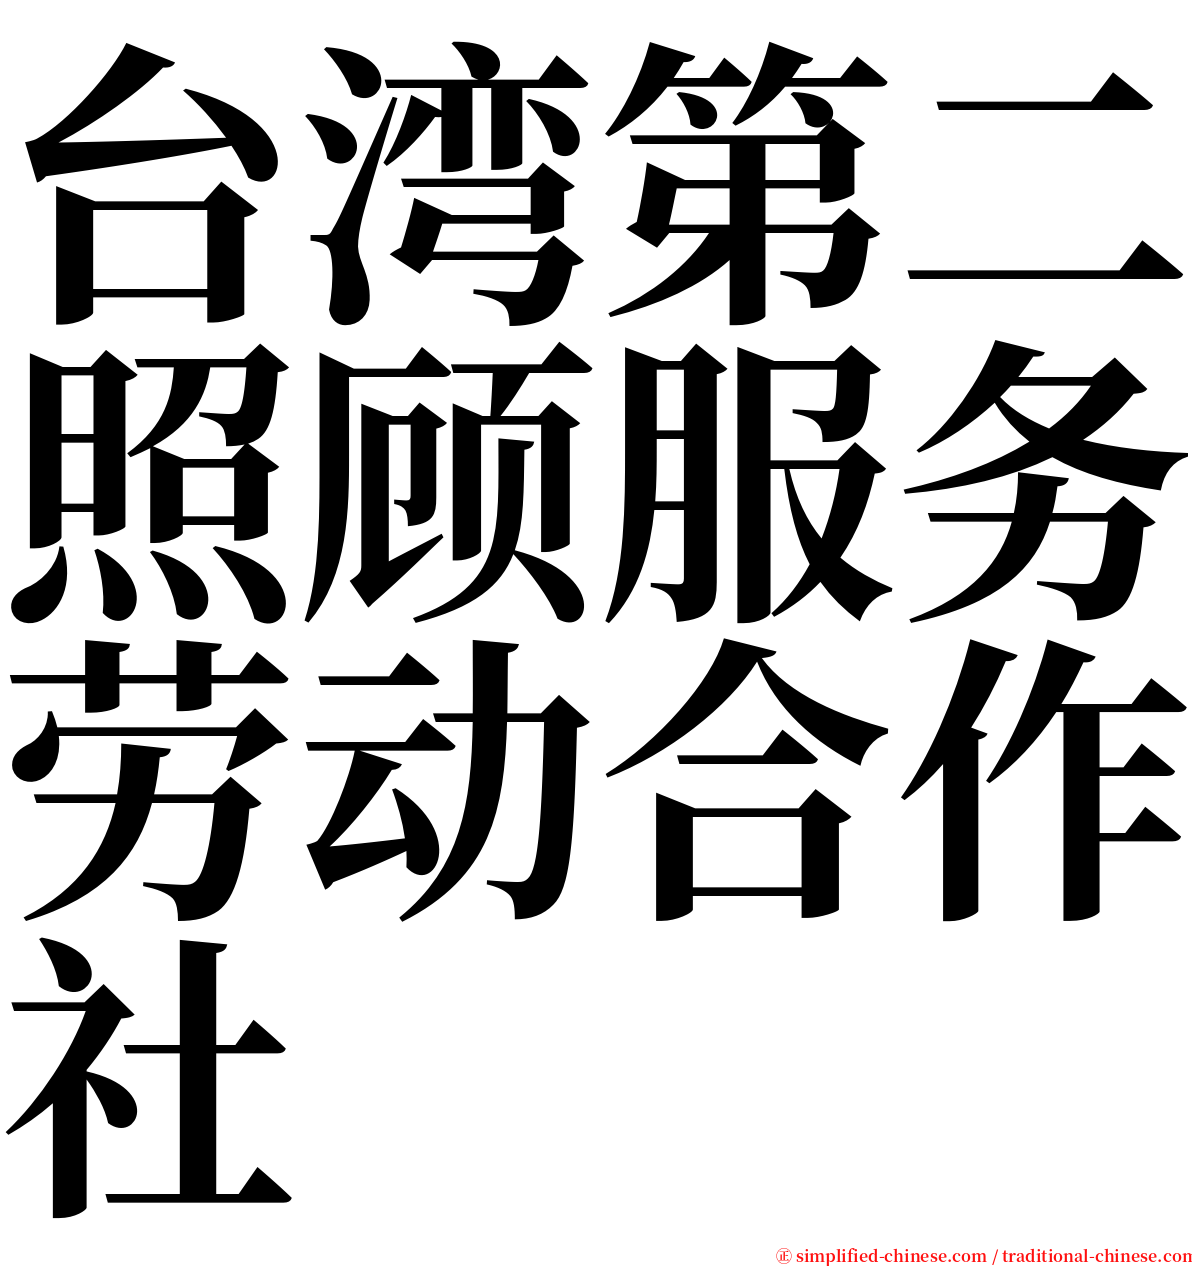 台湾第二照顾服务劳动合作社 serif font